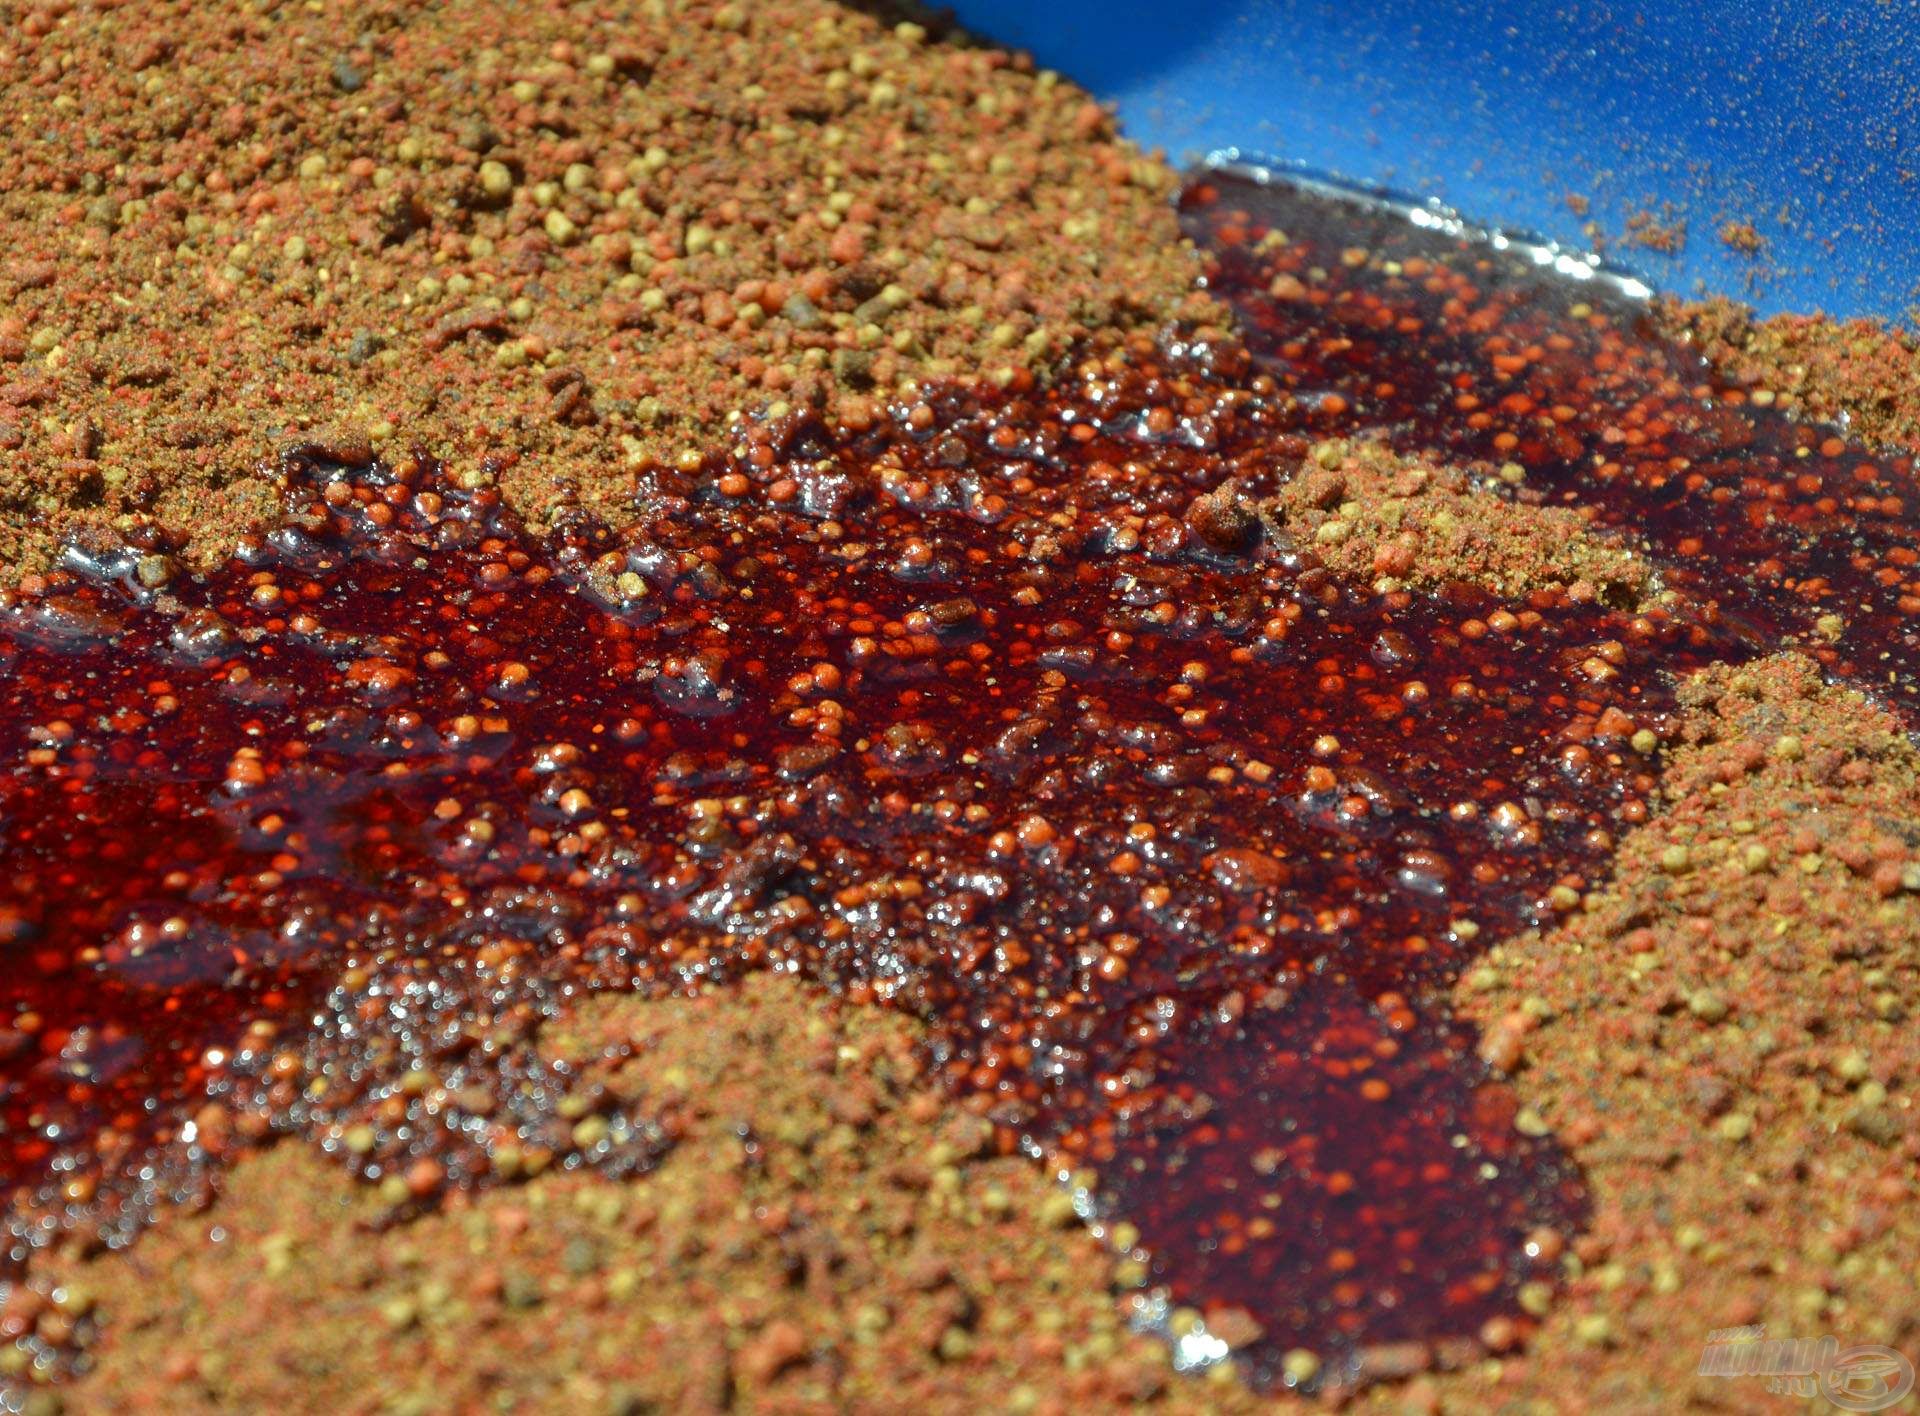 A nagyméretű száraz szemcsék, mikropelletek könnyedén szívják magukba az értékes vörös folyadékot